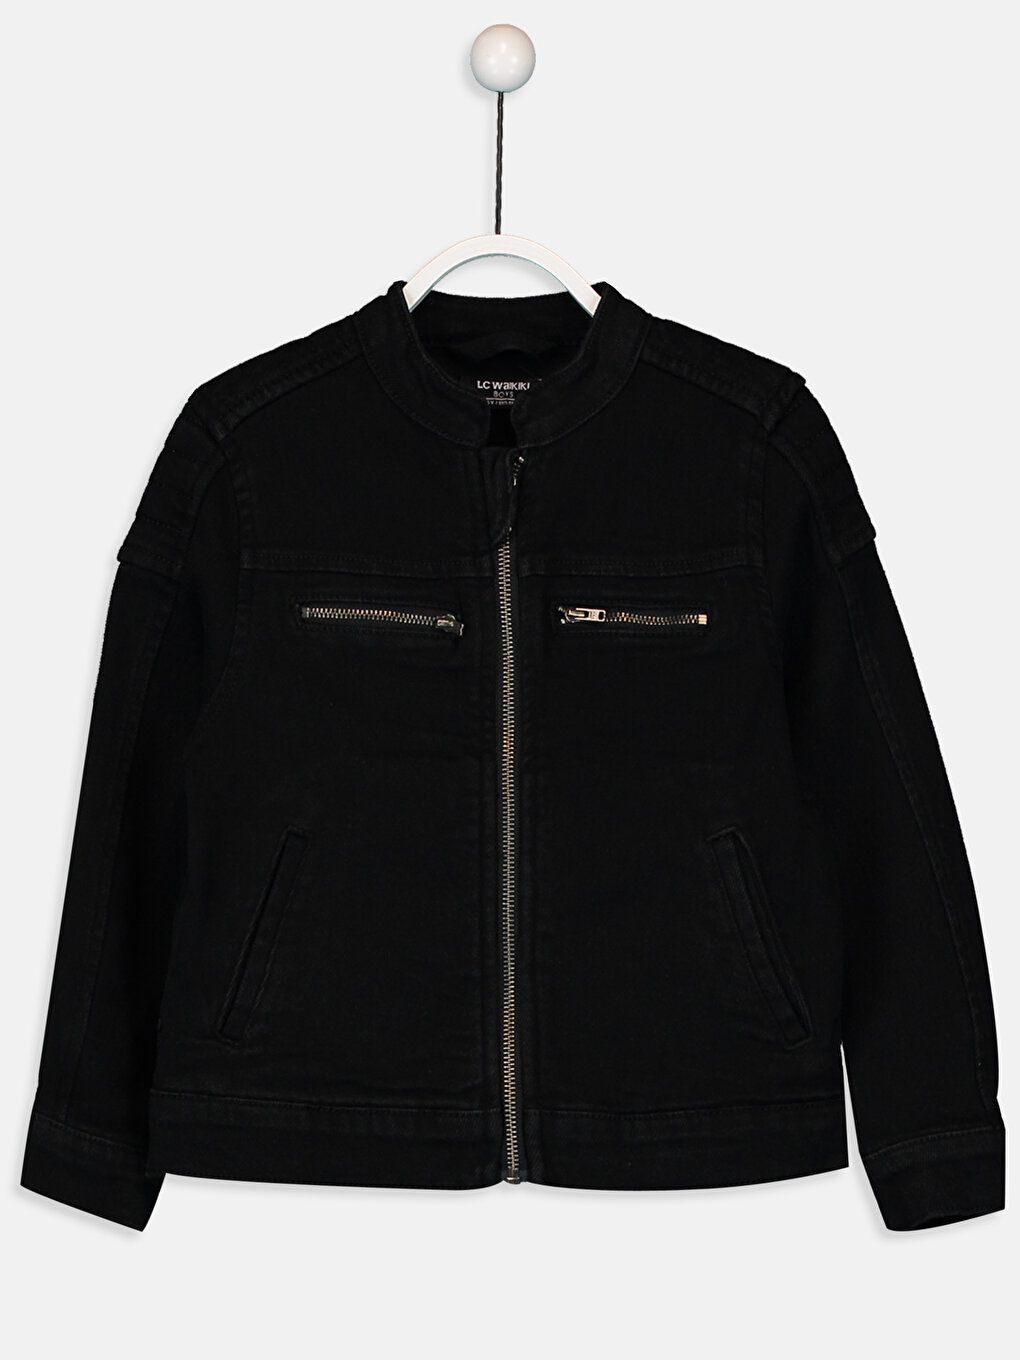 Amazon.com: Kids Boys Jackets Designer Jet Black Denim Jeans Fashion Jacket  Coat Age 3-13 Yr: Clothing, Shoes & Jewelry